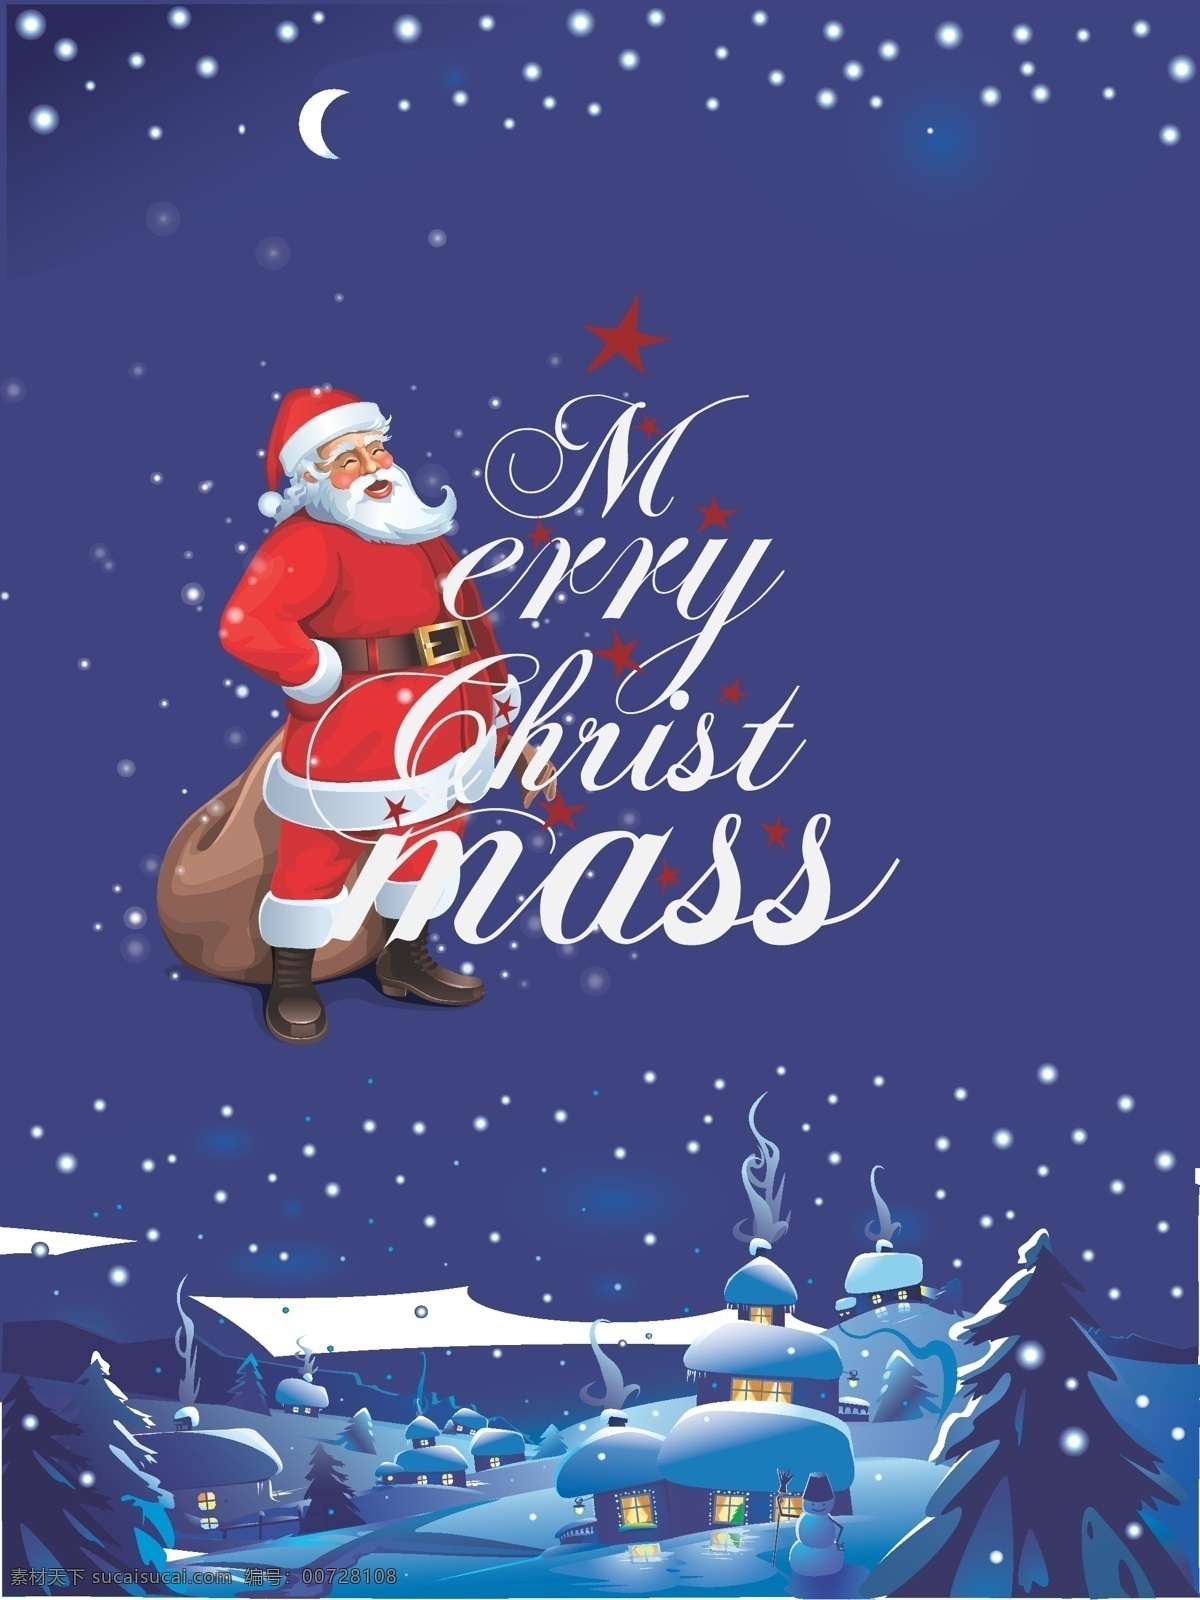 蓝色 圣诞 夜 雪景 矢量 背景 欧式小屋雪景 圣诞夜景海报 冬季雪景海报 矢量圣诞素材 欧式 手写 字体 祝福背景 开心